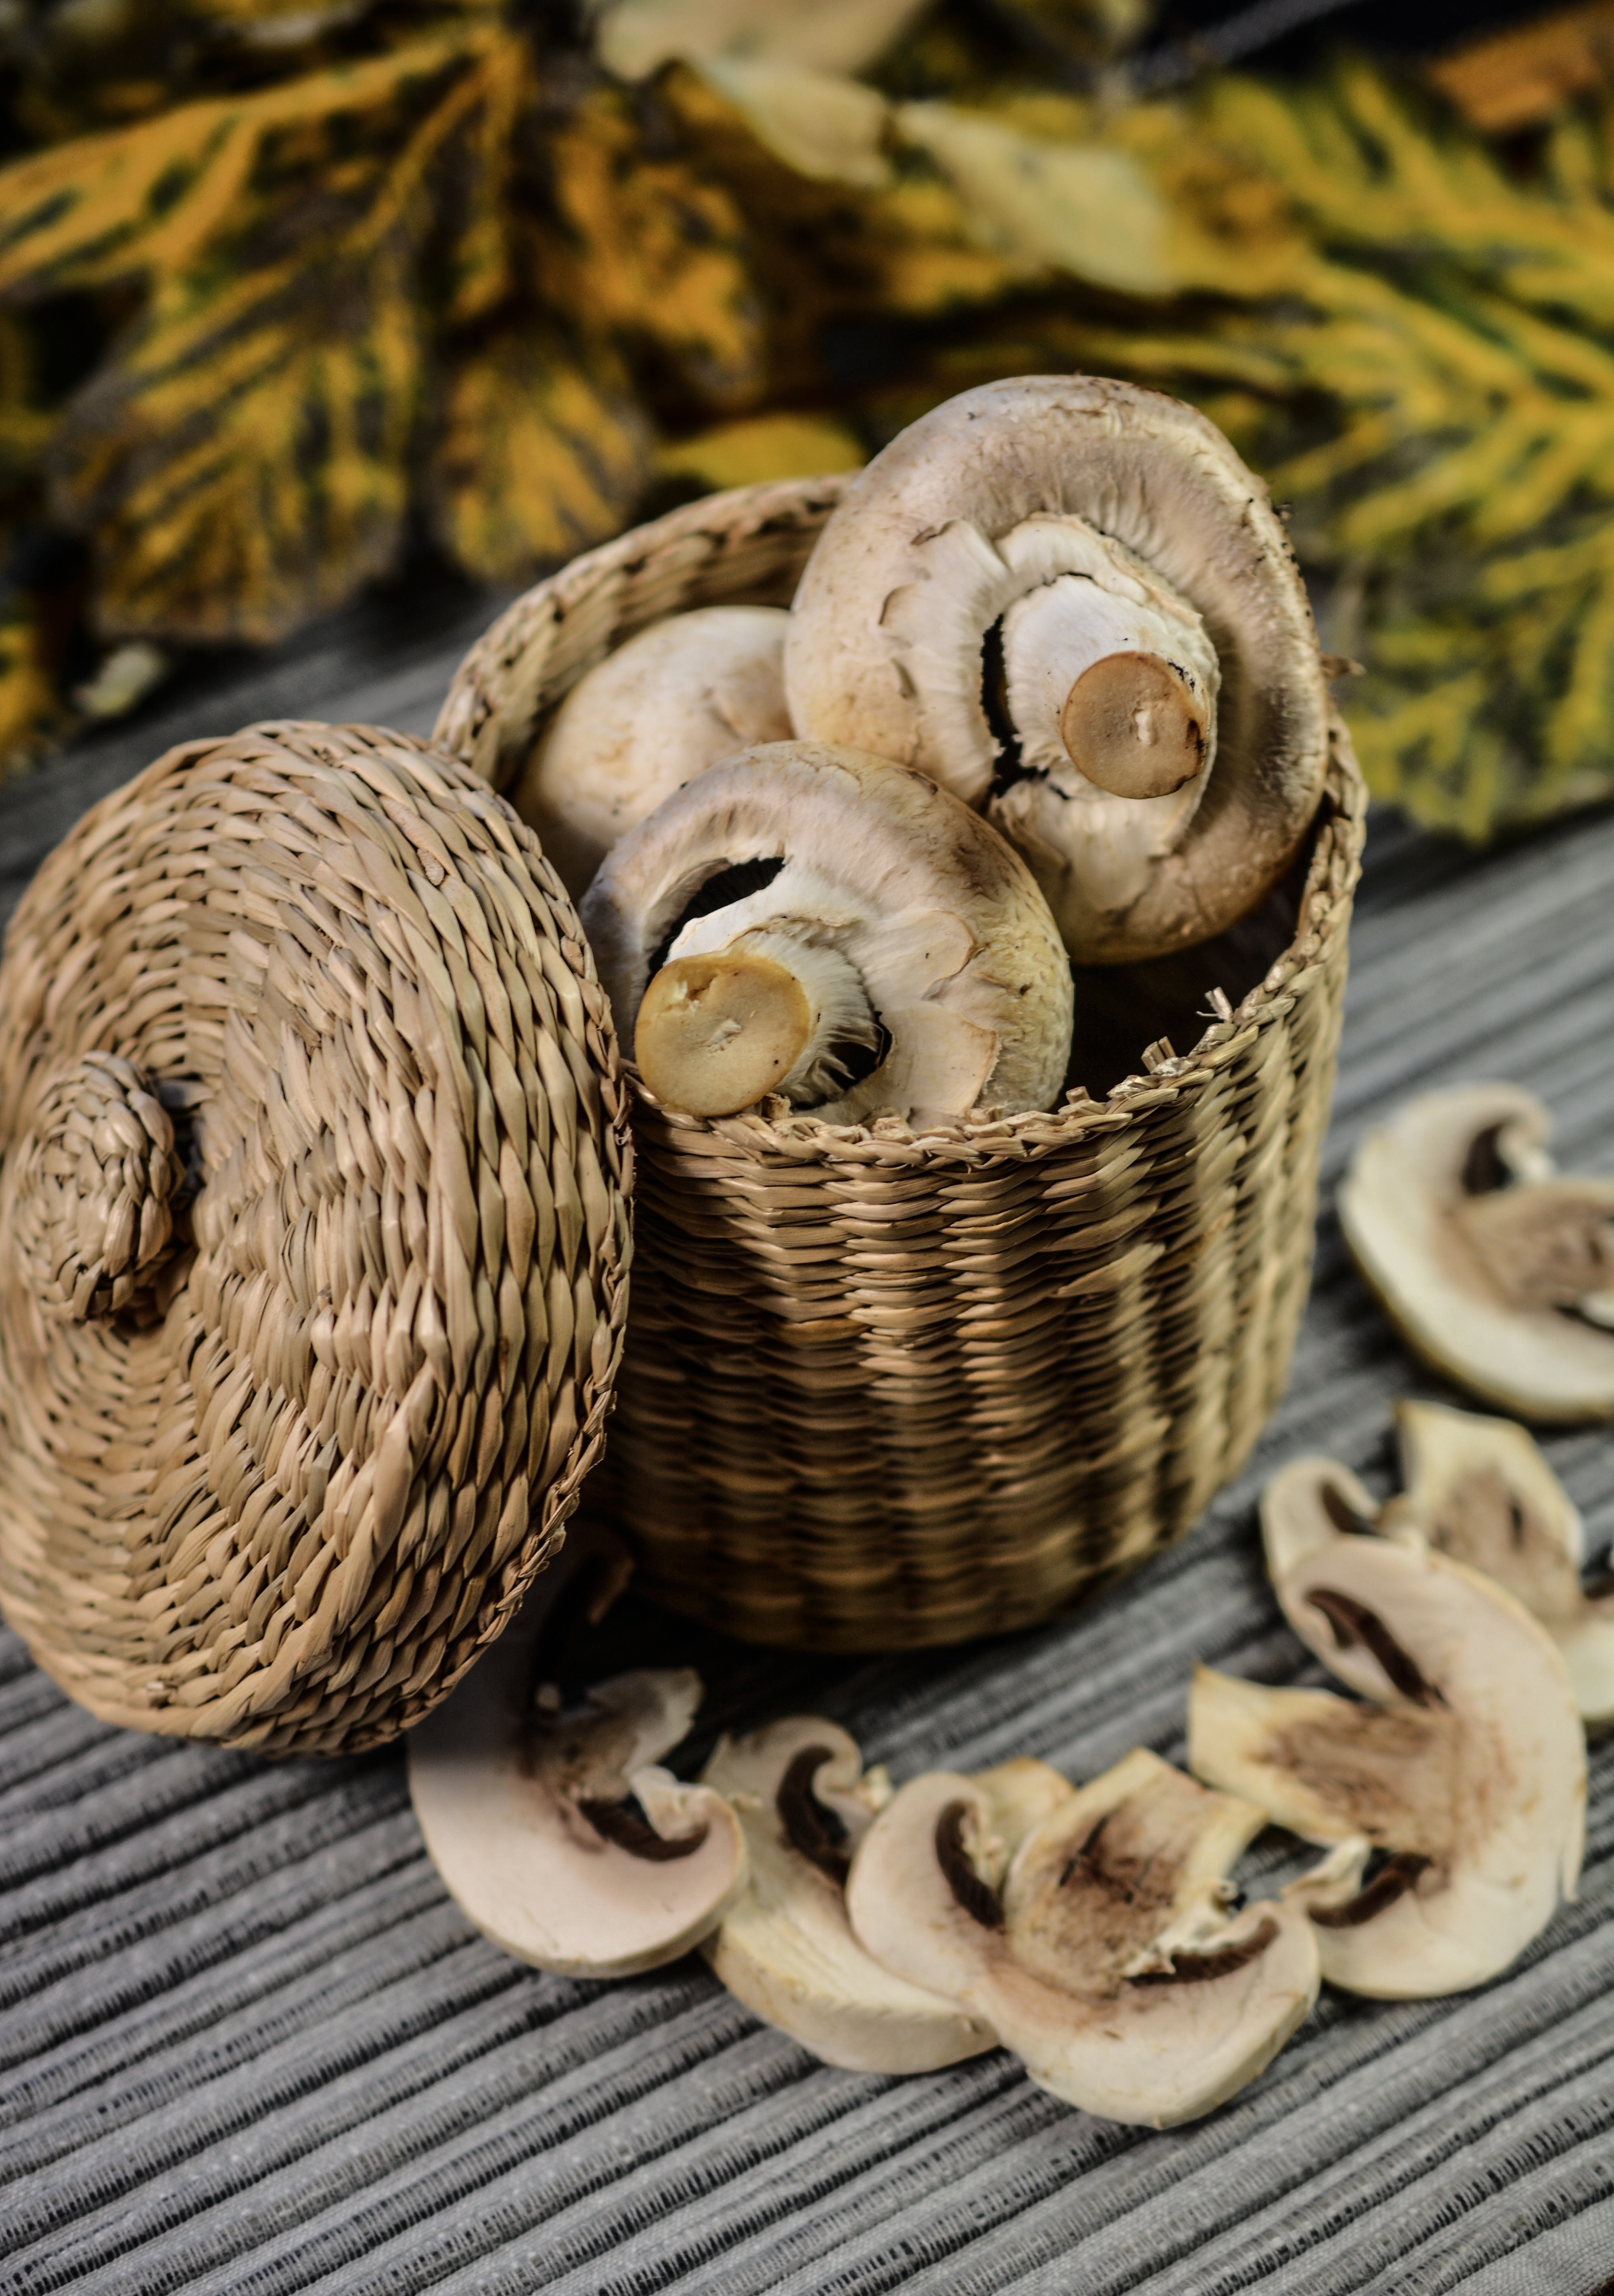 button mushrooms in wicker basket